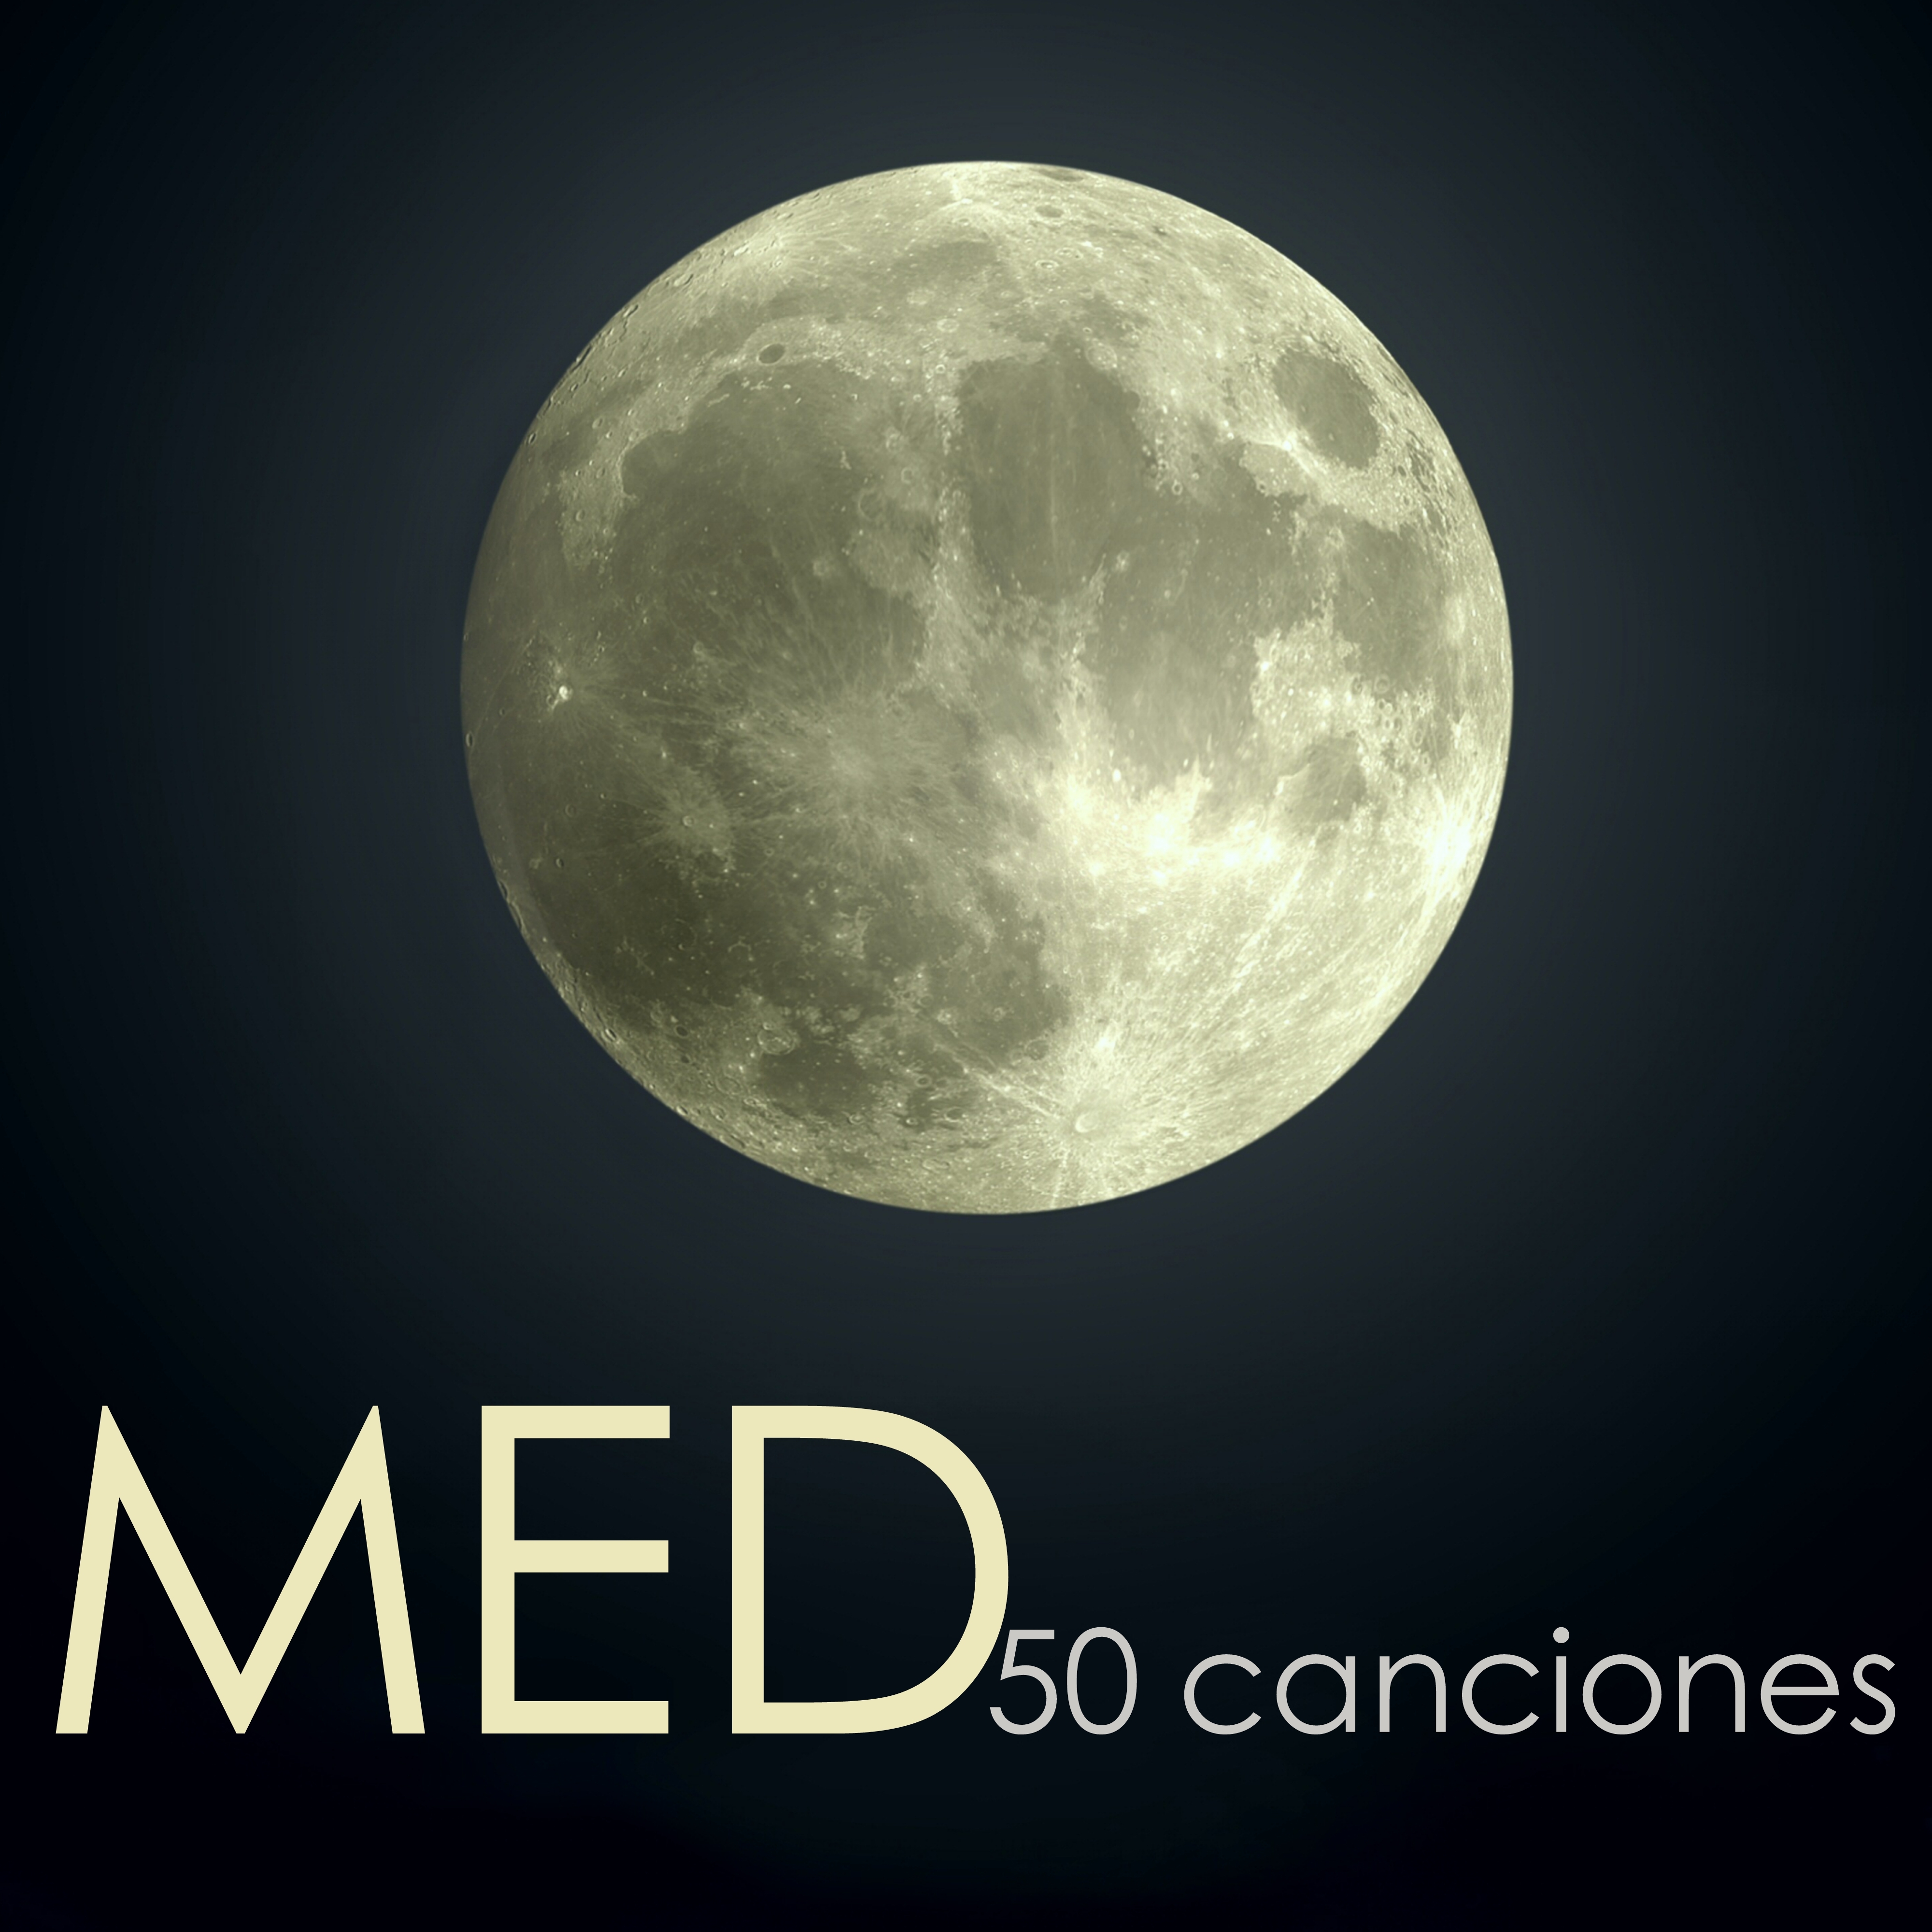 50 Med  50 Canciones de Meditacio n para Sanar el Alma, Concentrarse, Combatir le Estre s y Relajar la Mente